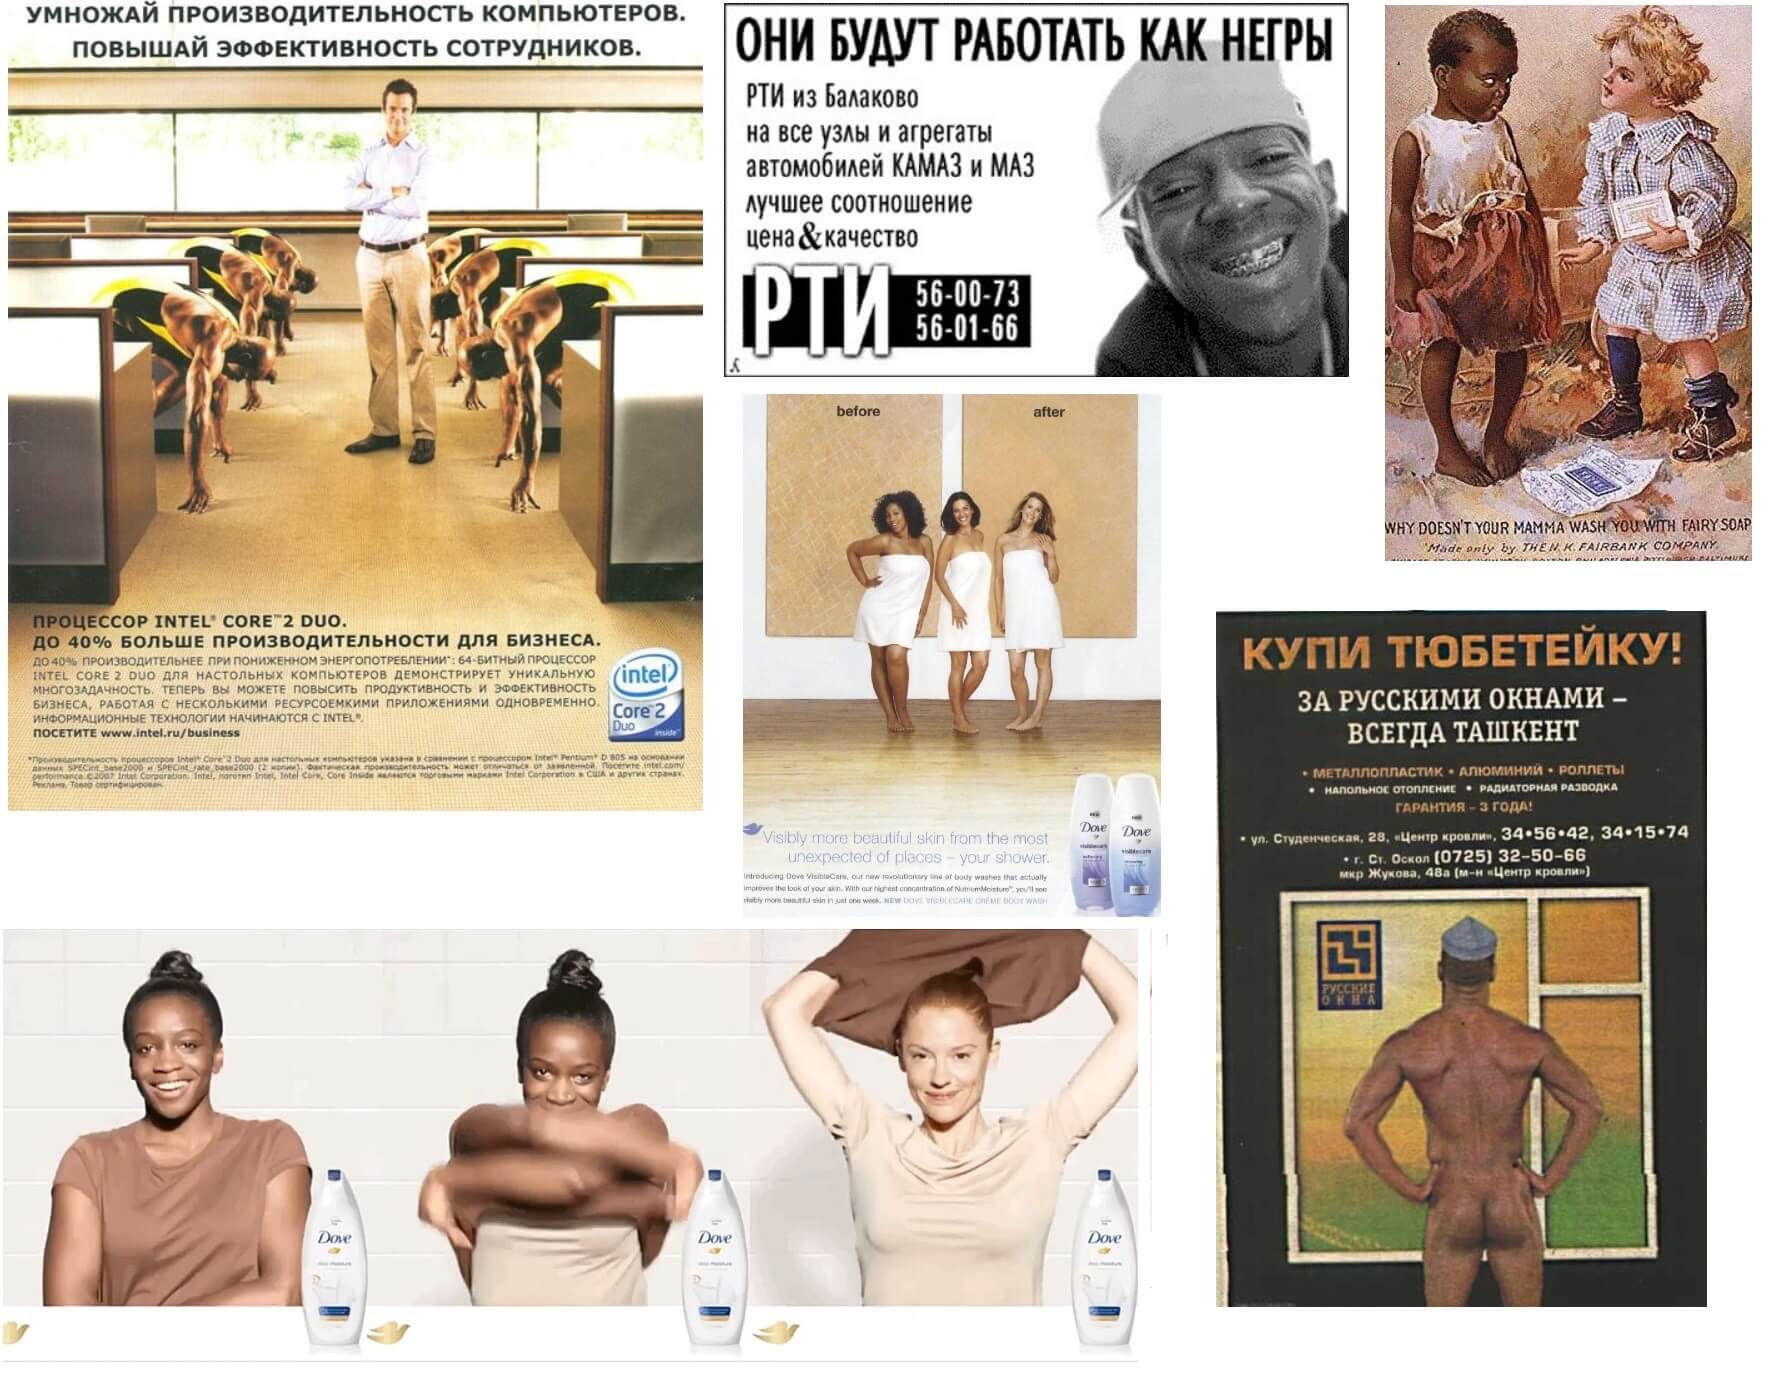 Примеры скандальной рекламы, использующей расизм.jpg